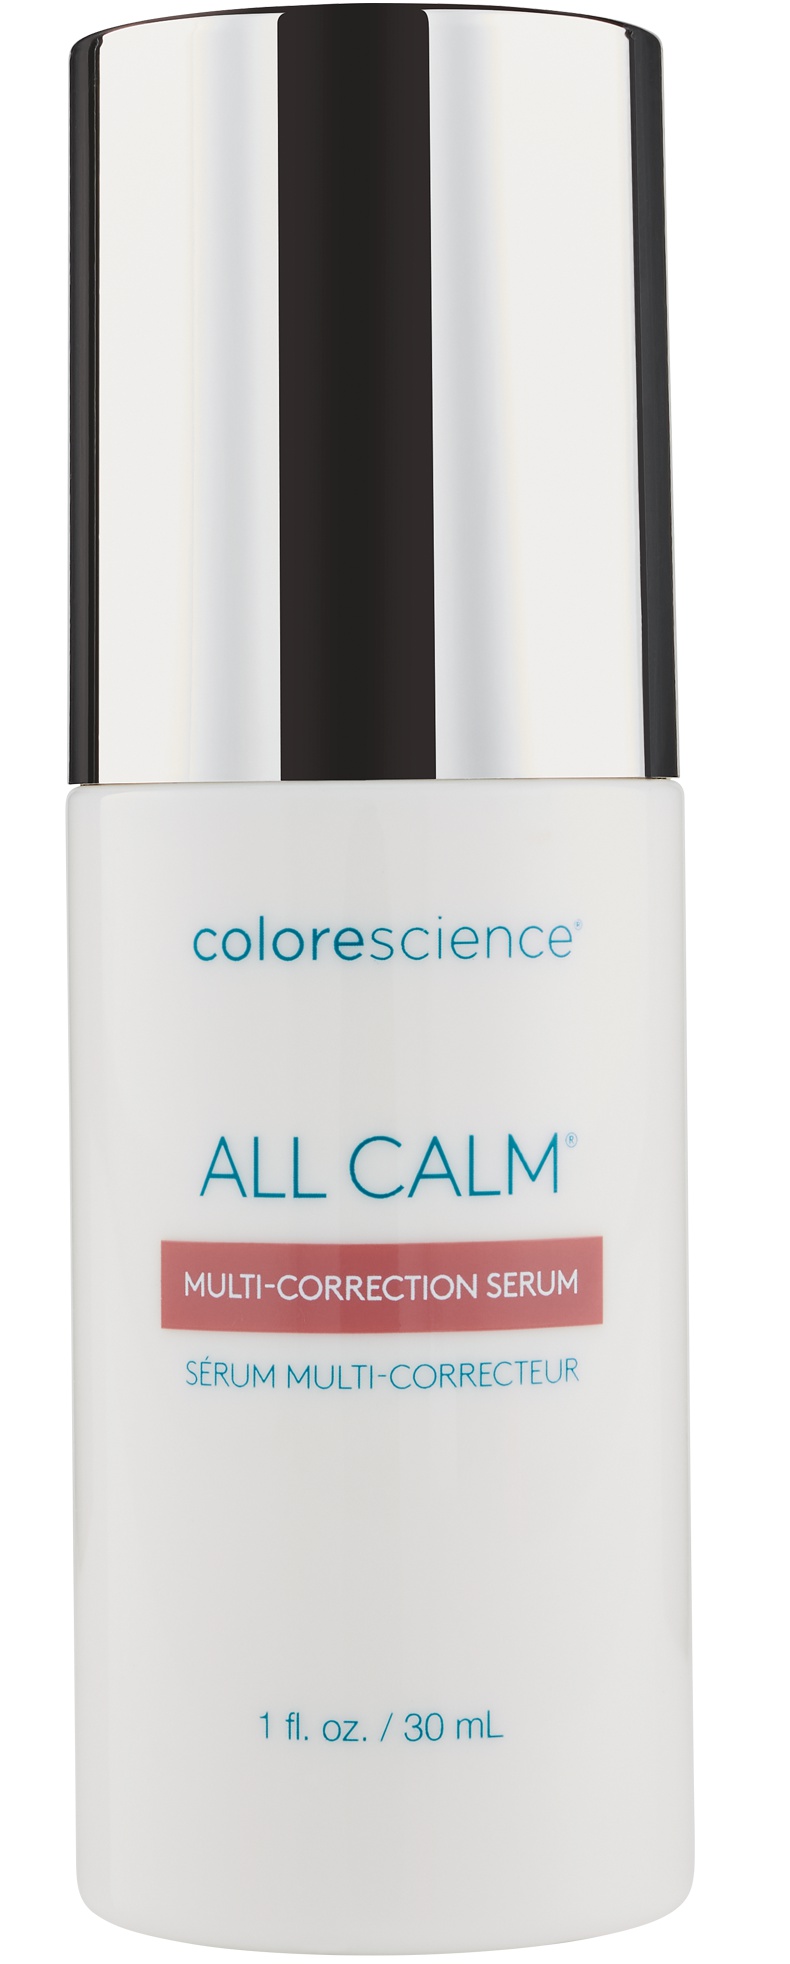 Colorescience All Calm Multi-correction Serum